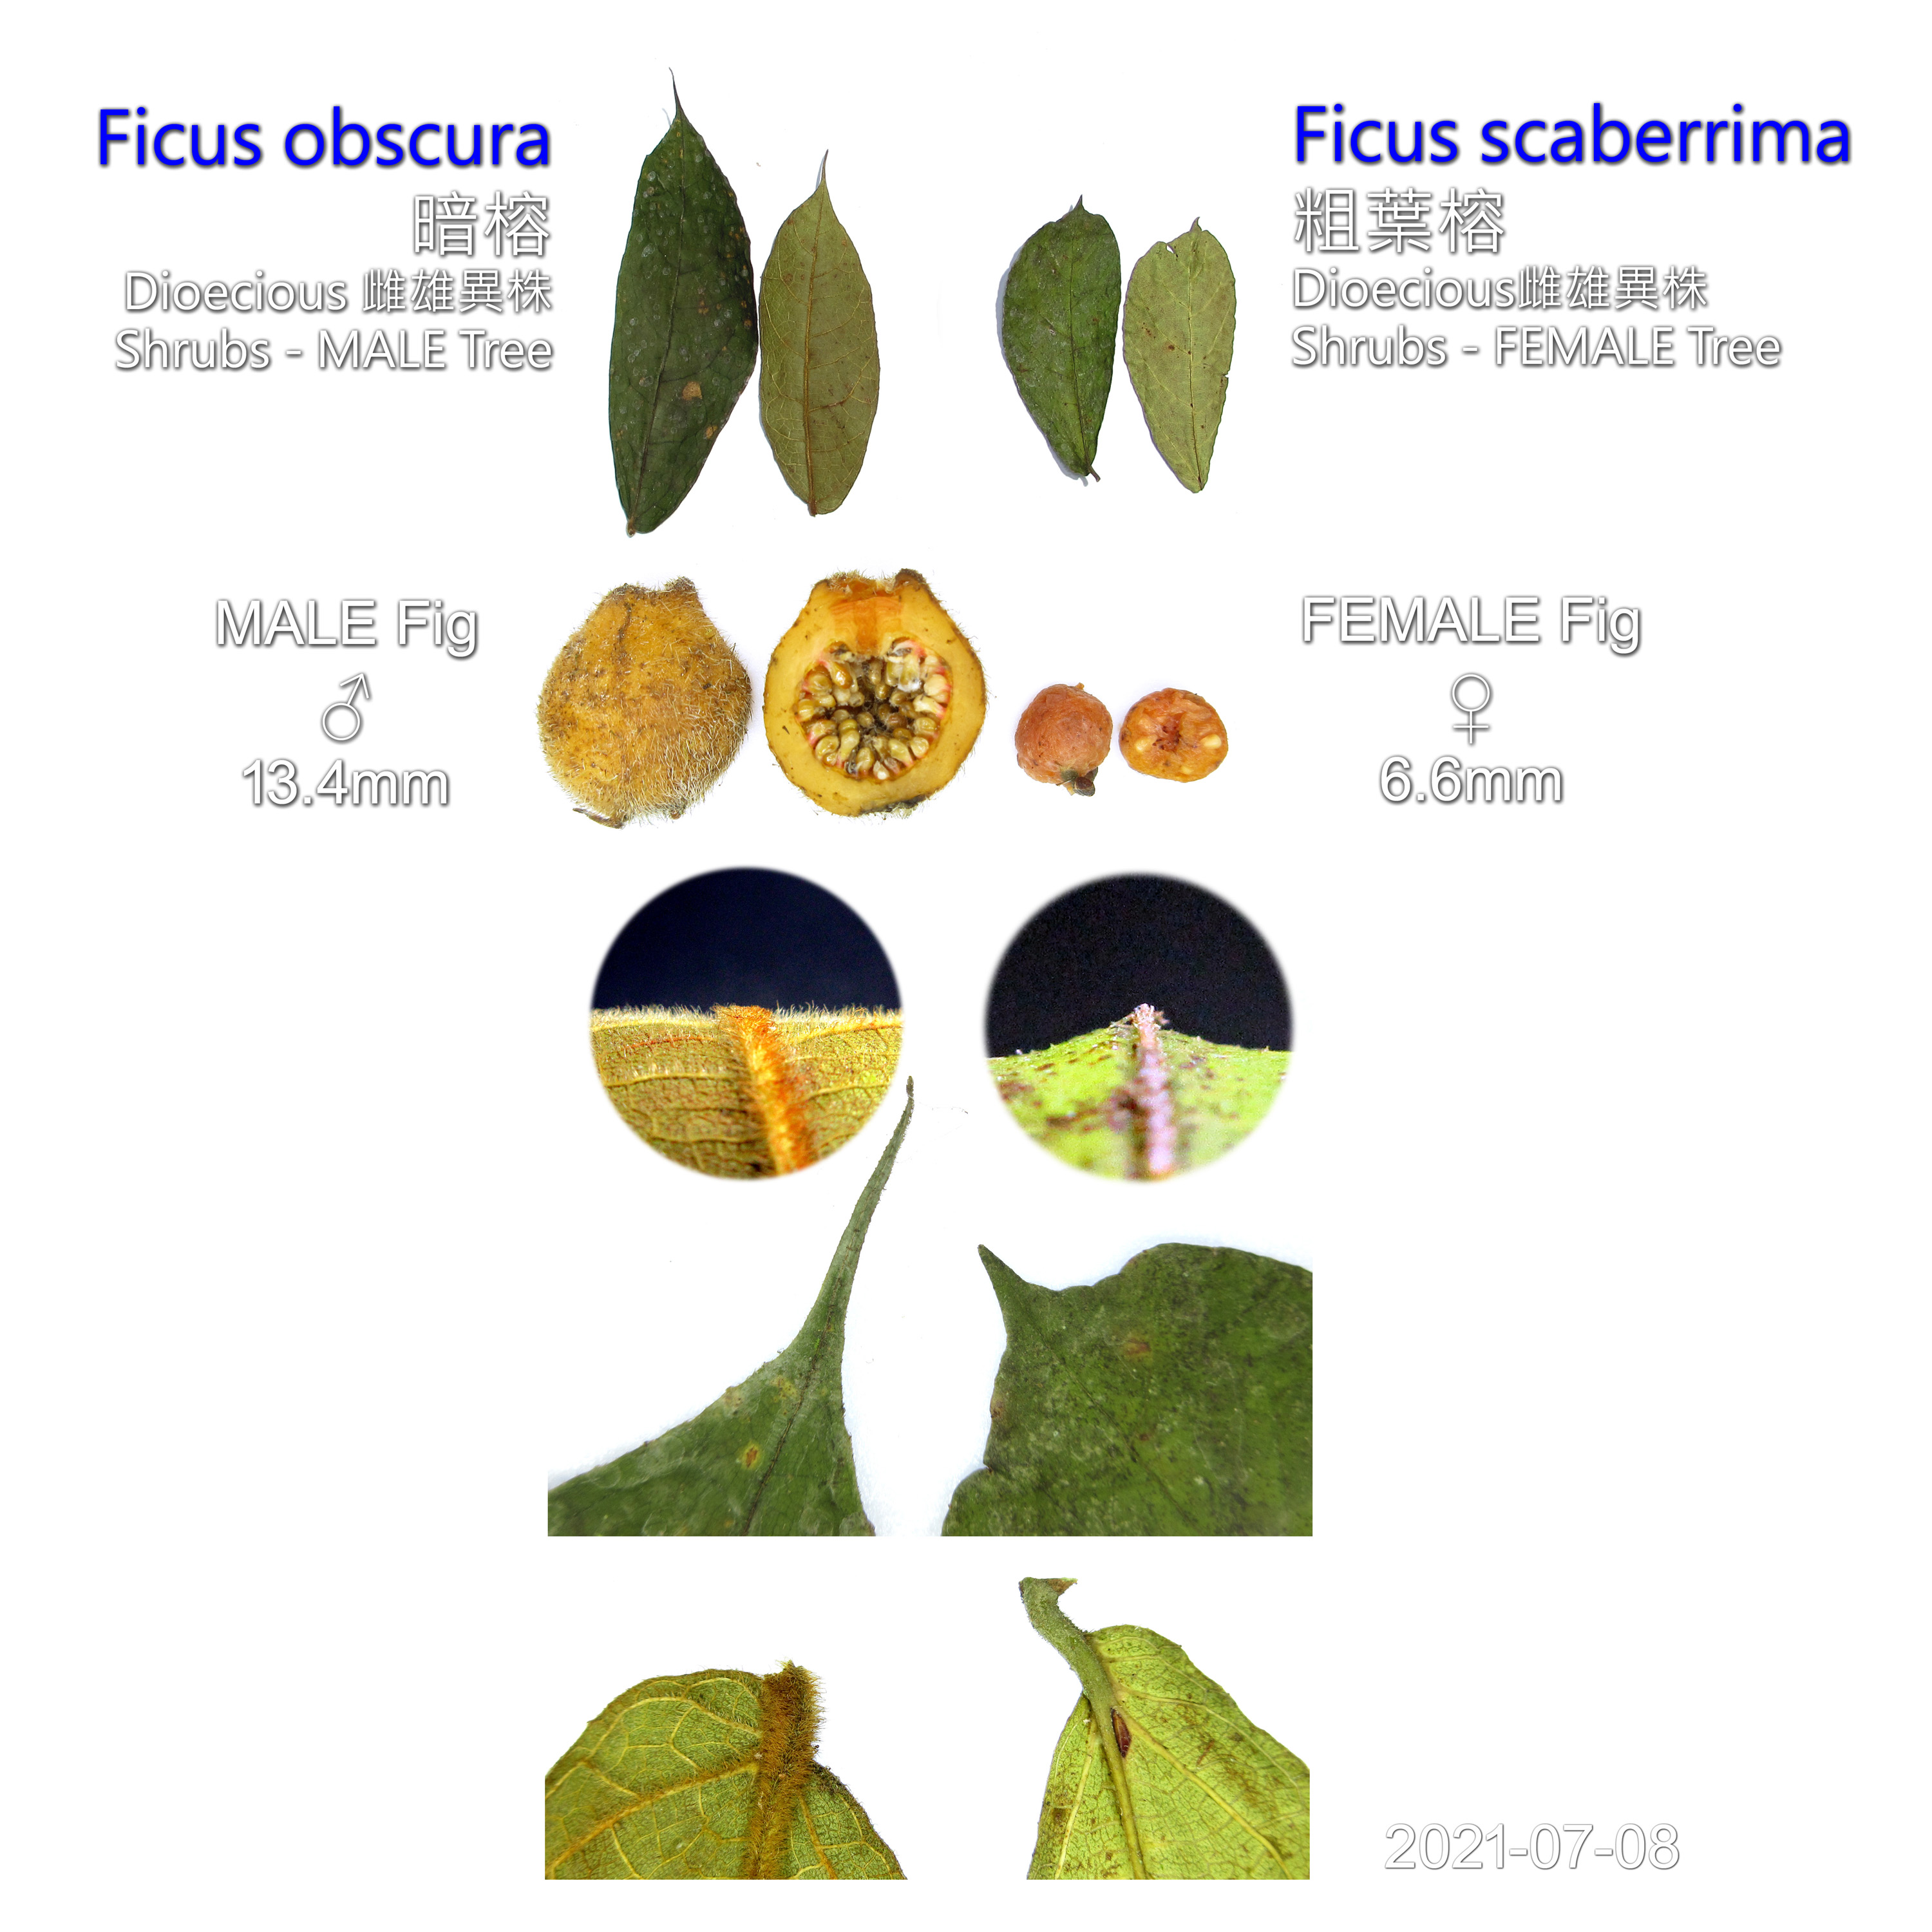 Comparison of Ficus obscura 暗榕 and Ficus scaberrima 粗葉榕